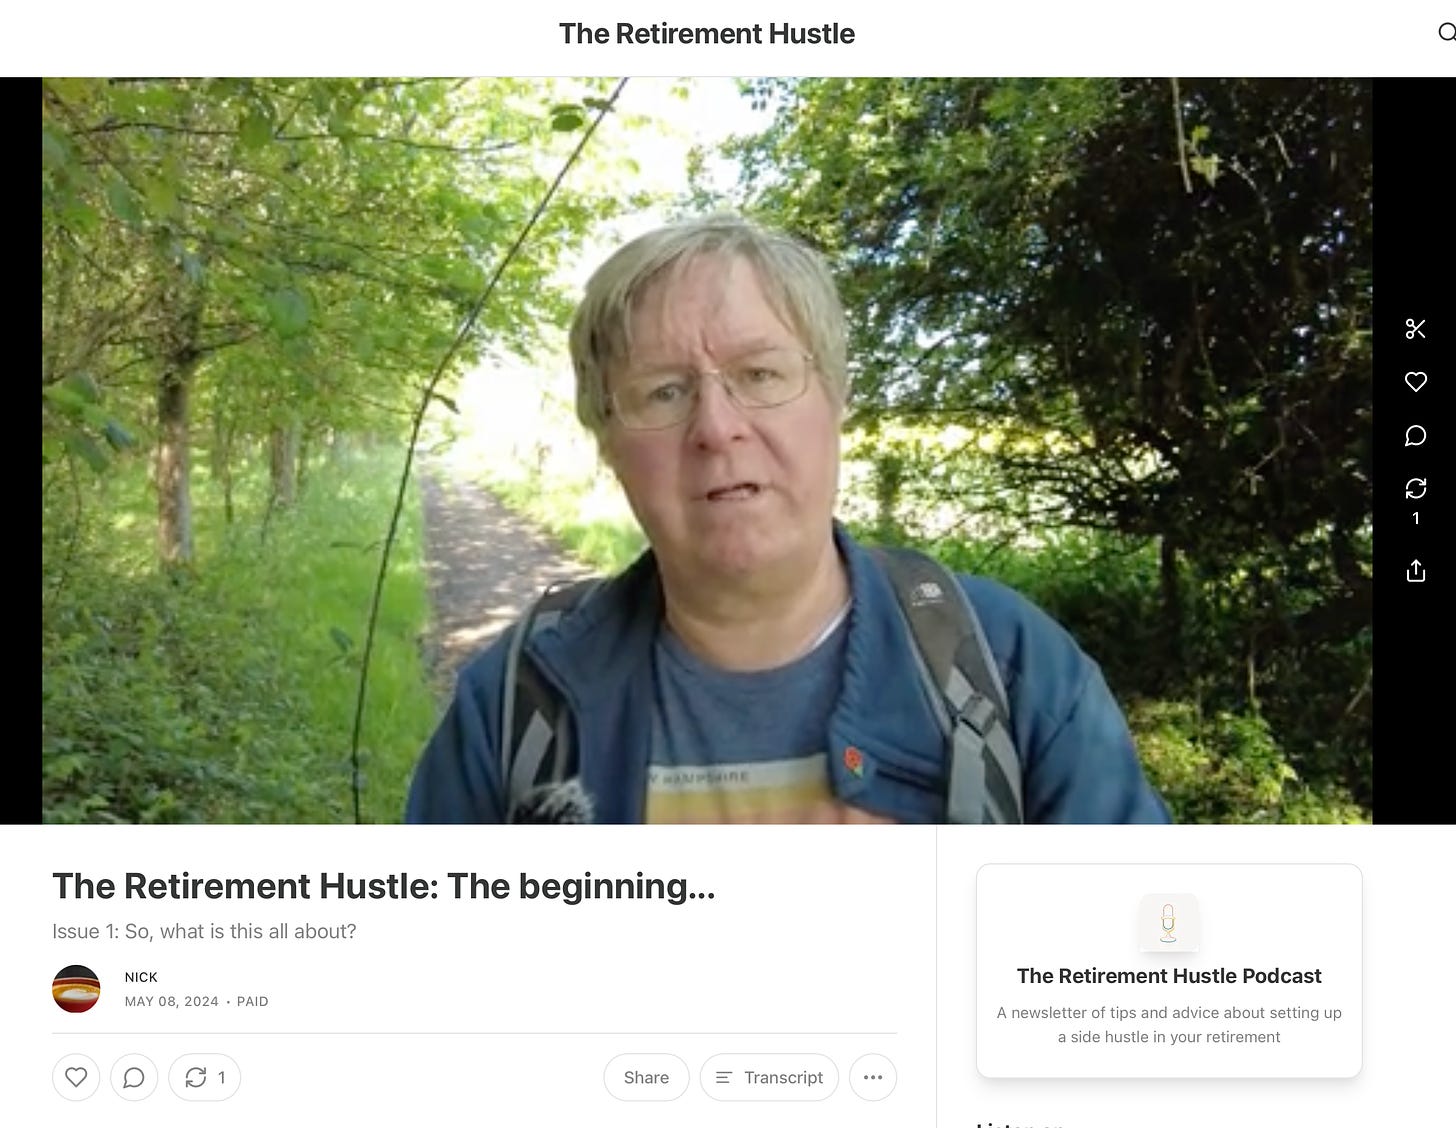 The Retirement Hustle Newsletter